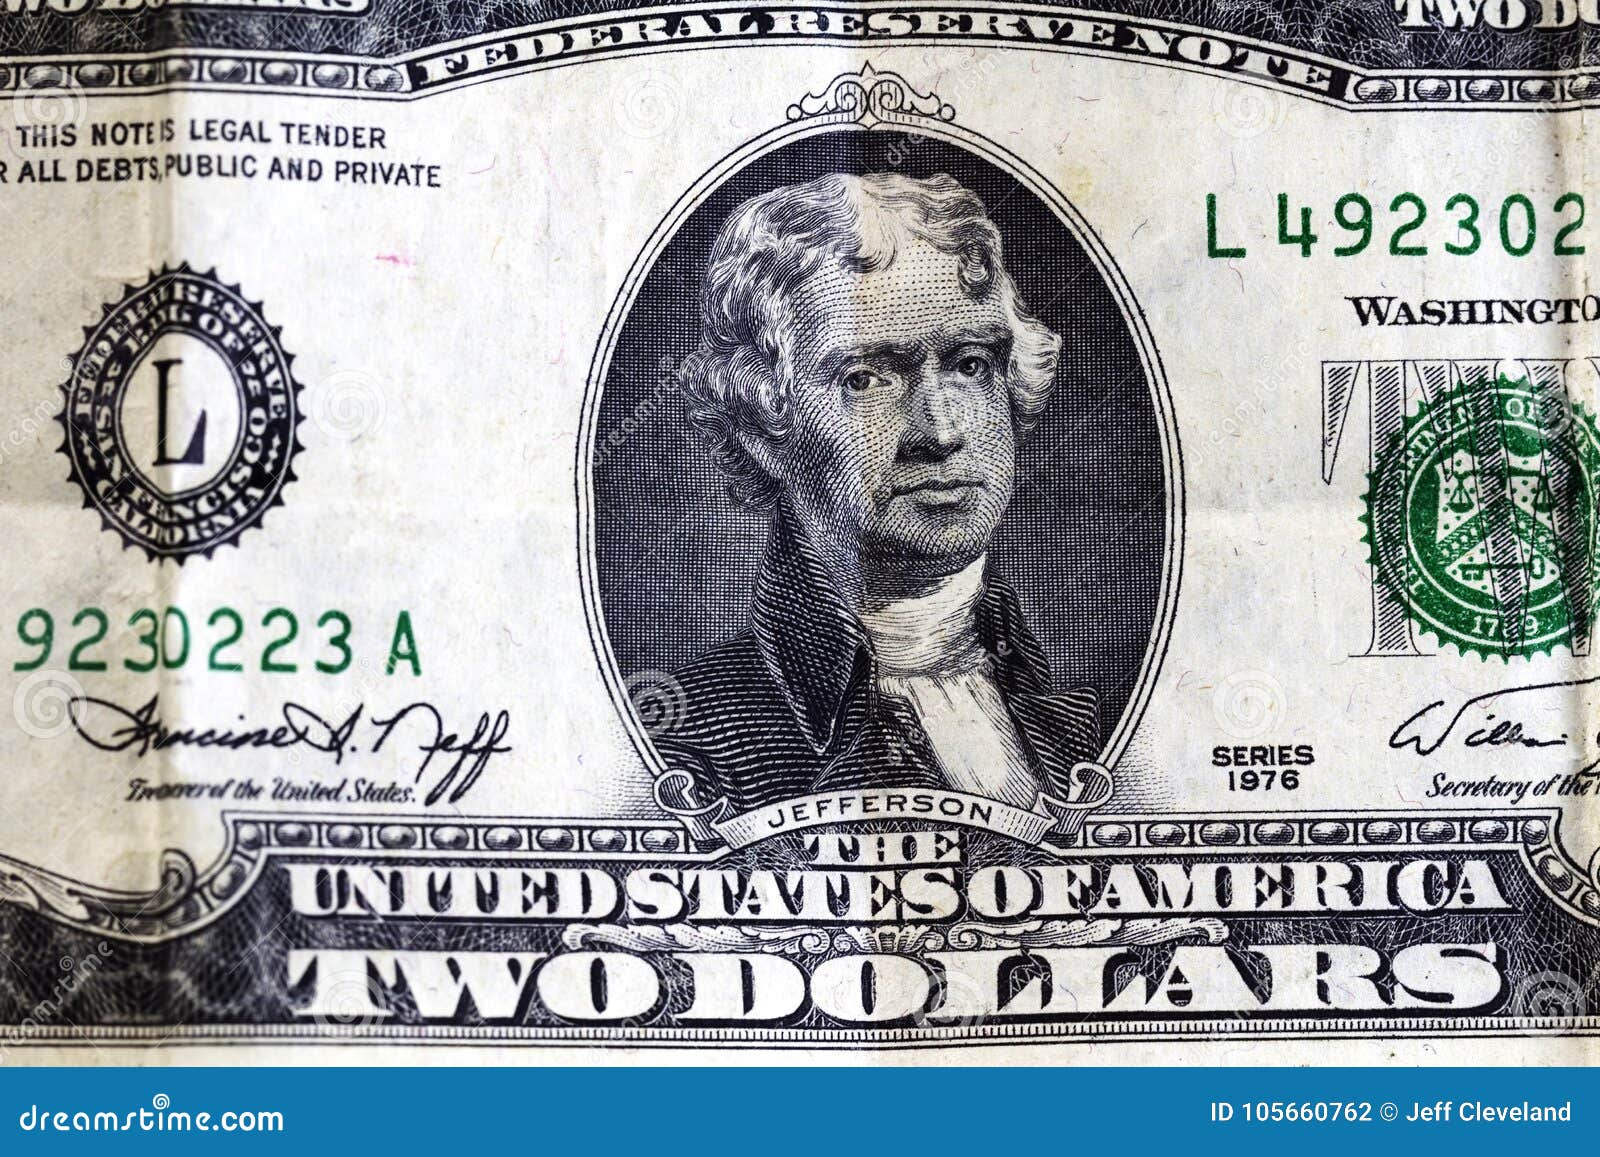 Линкольн изображение на купюре. Американский доллар что изображено на купюре.